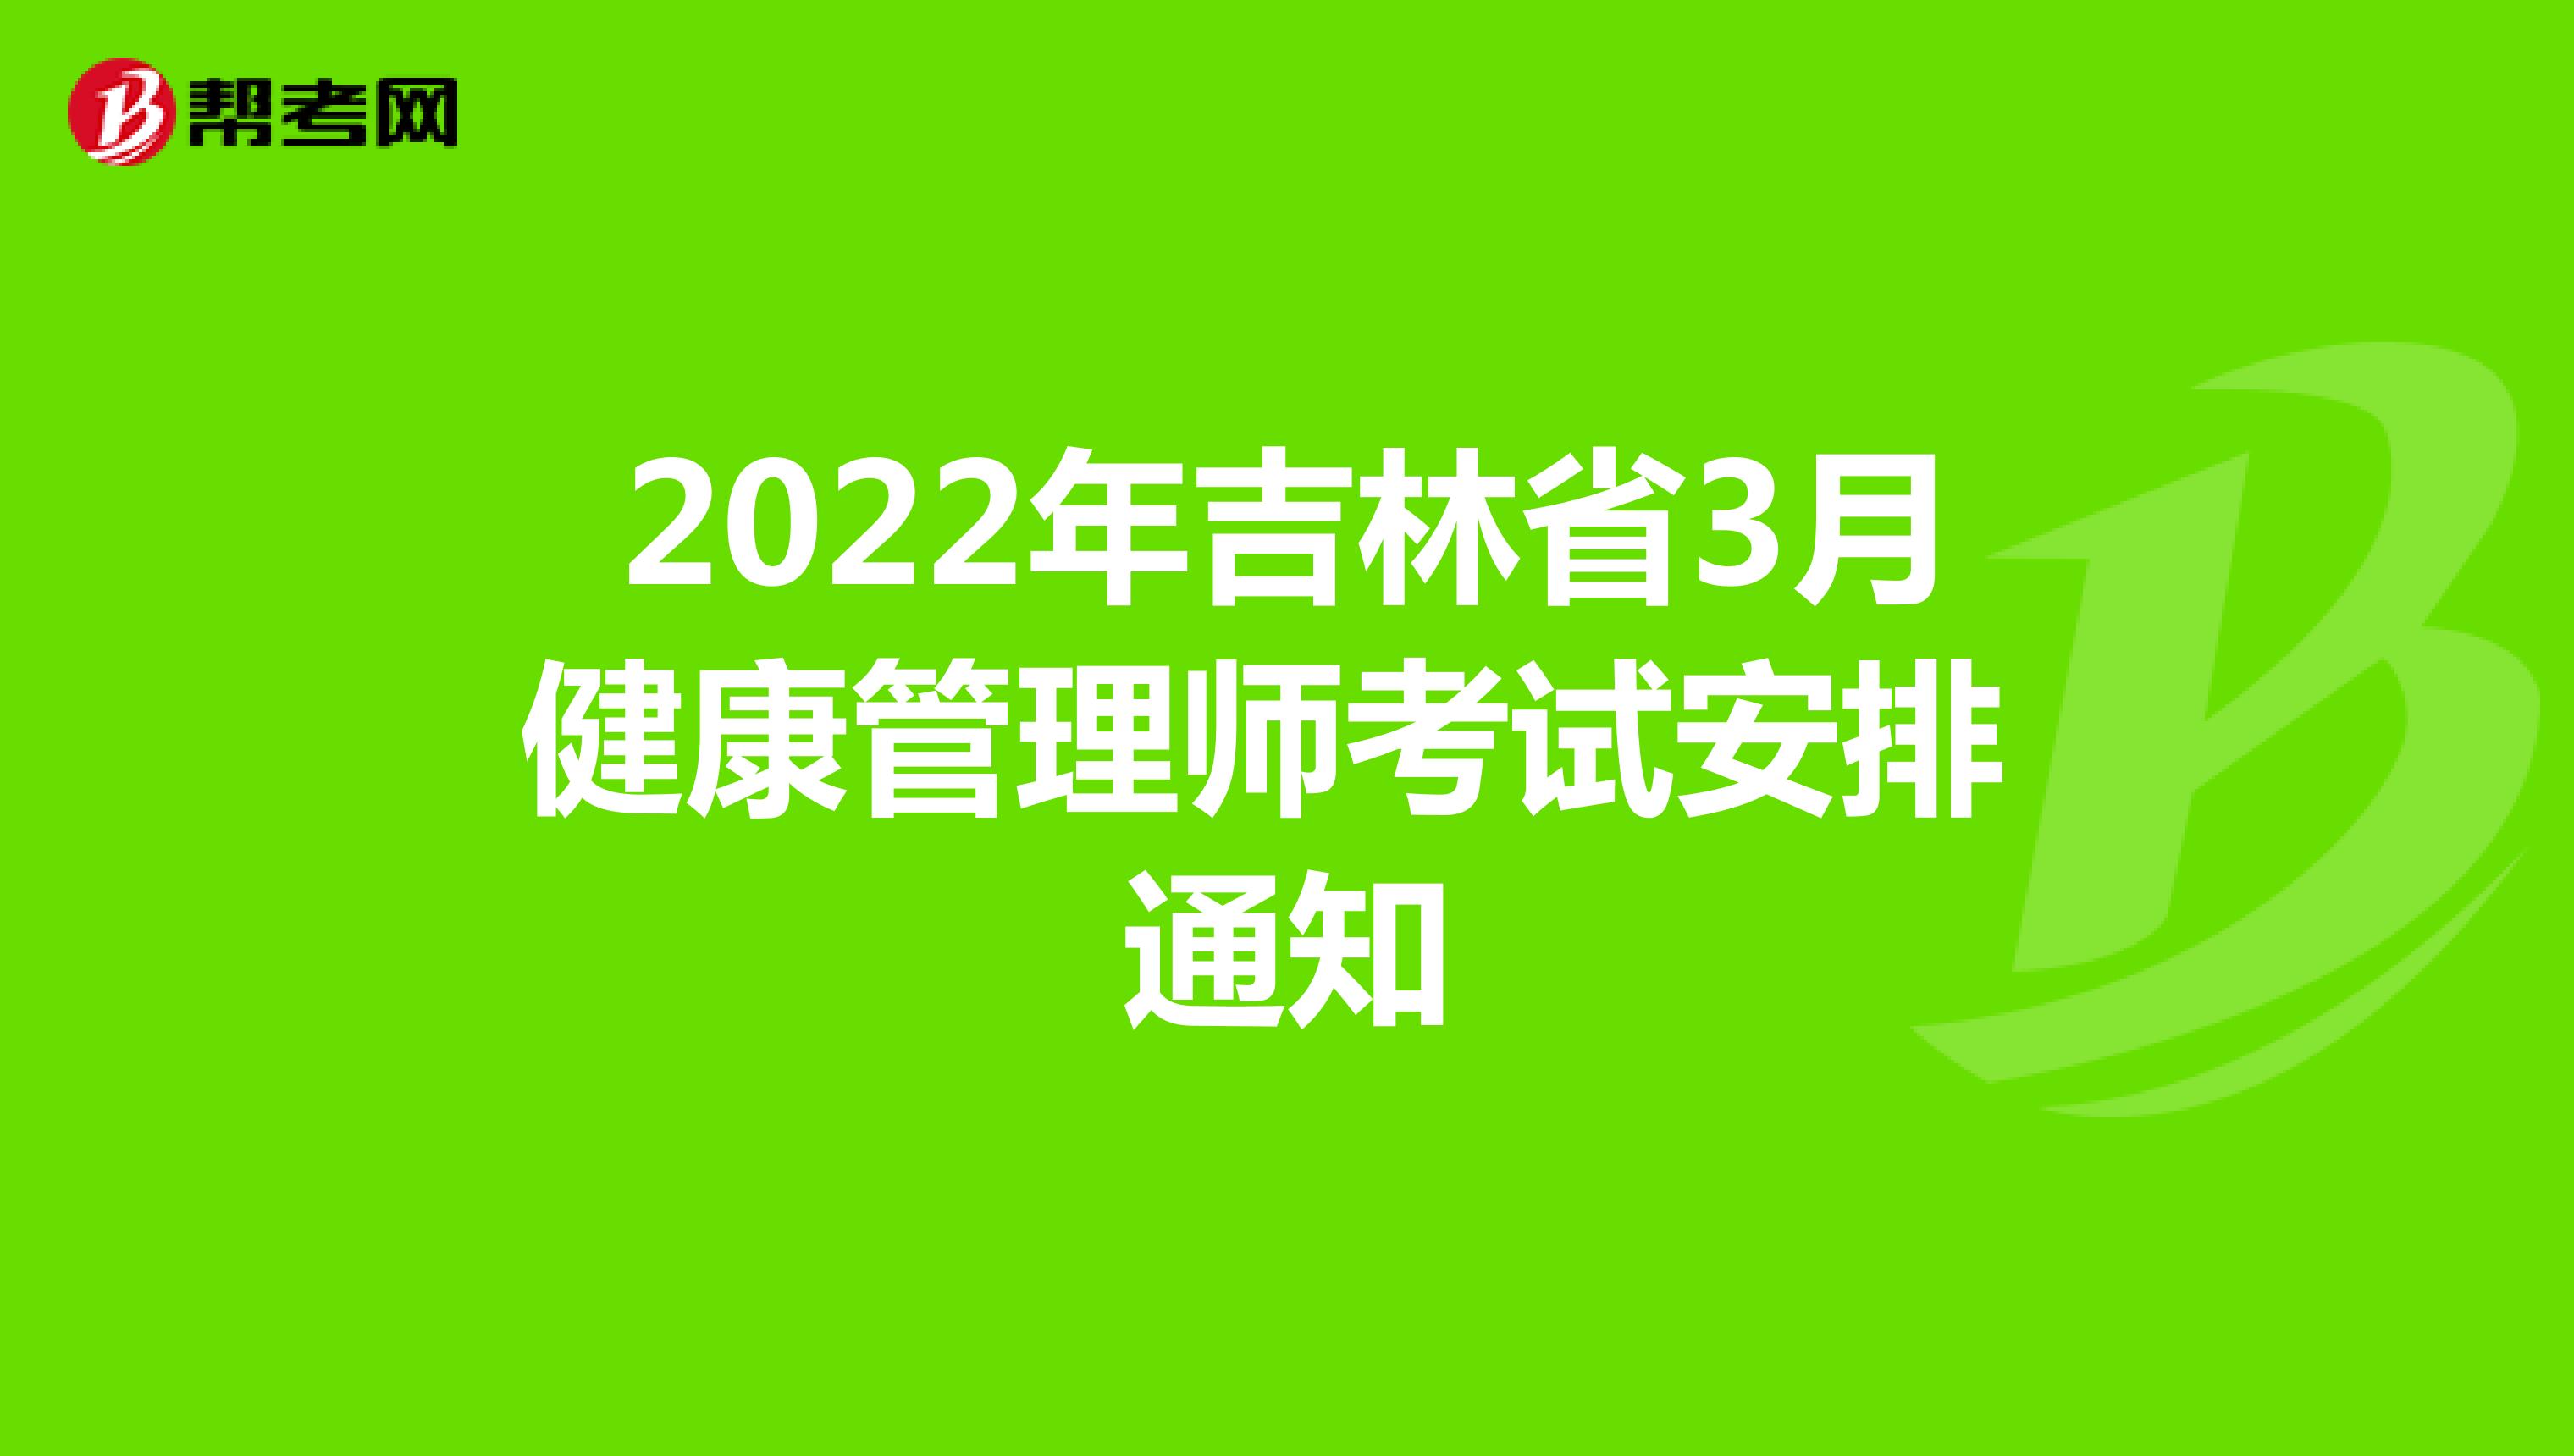 2022年吉林省3月健康管理师考试安排通知